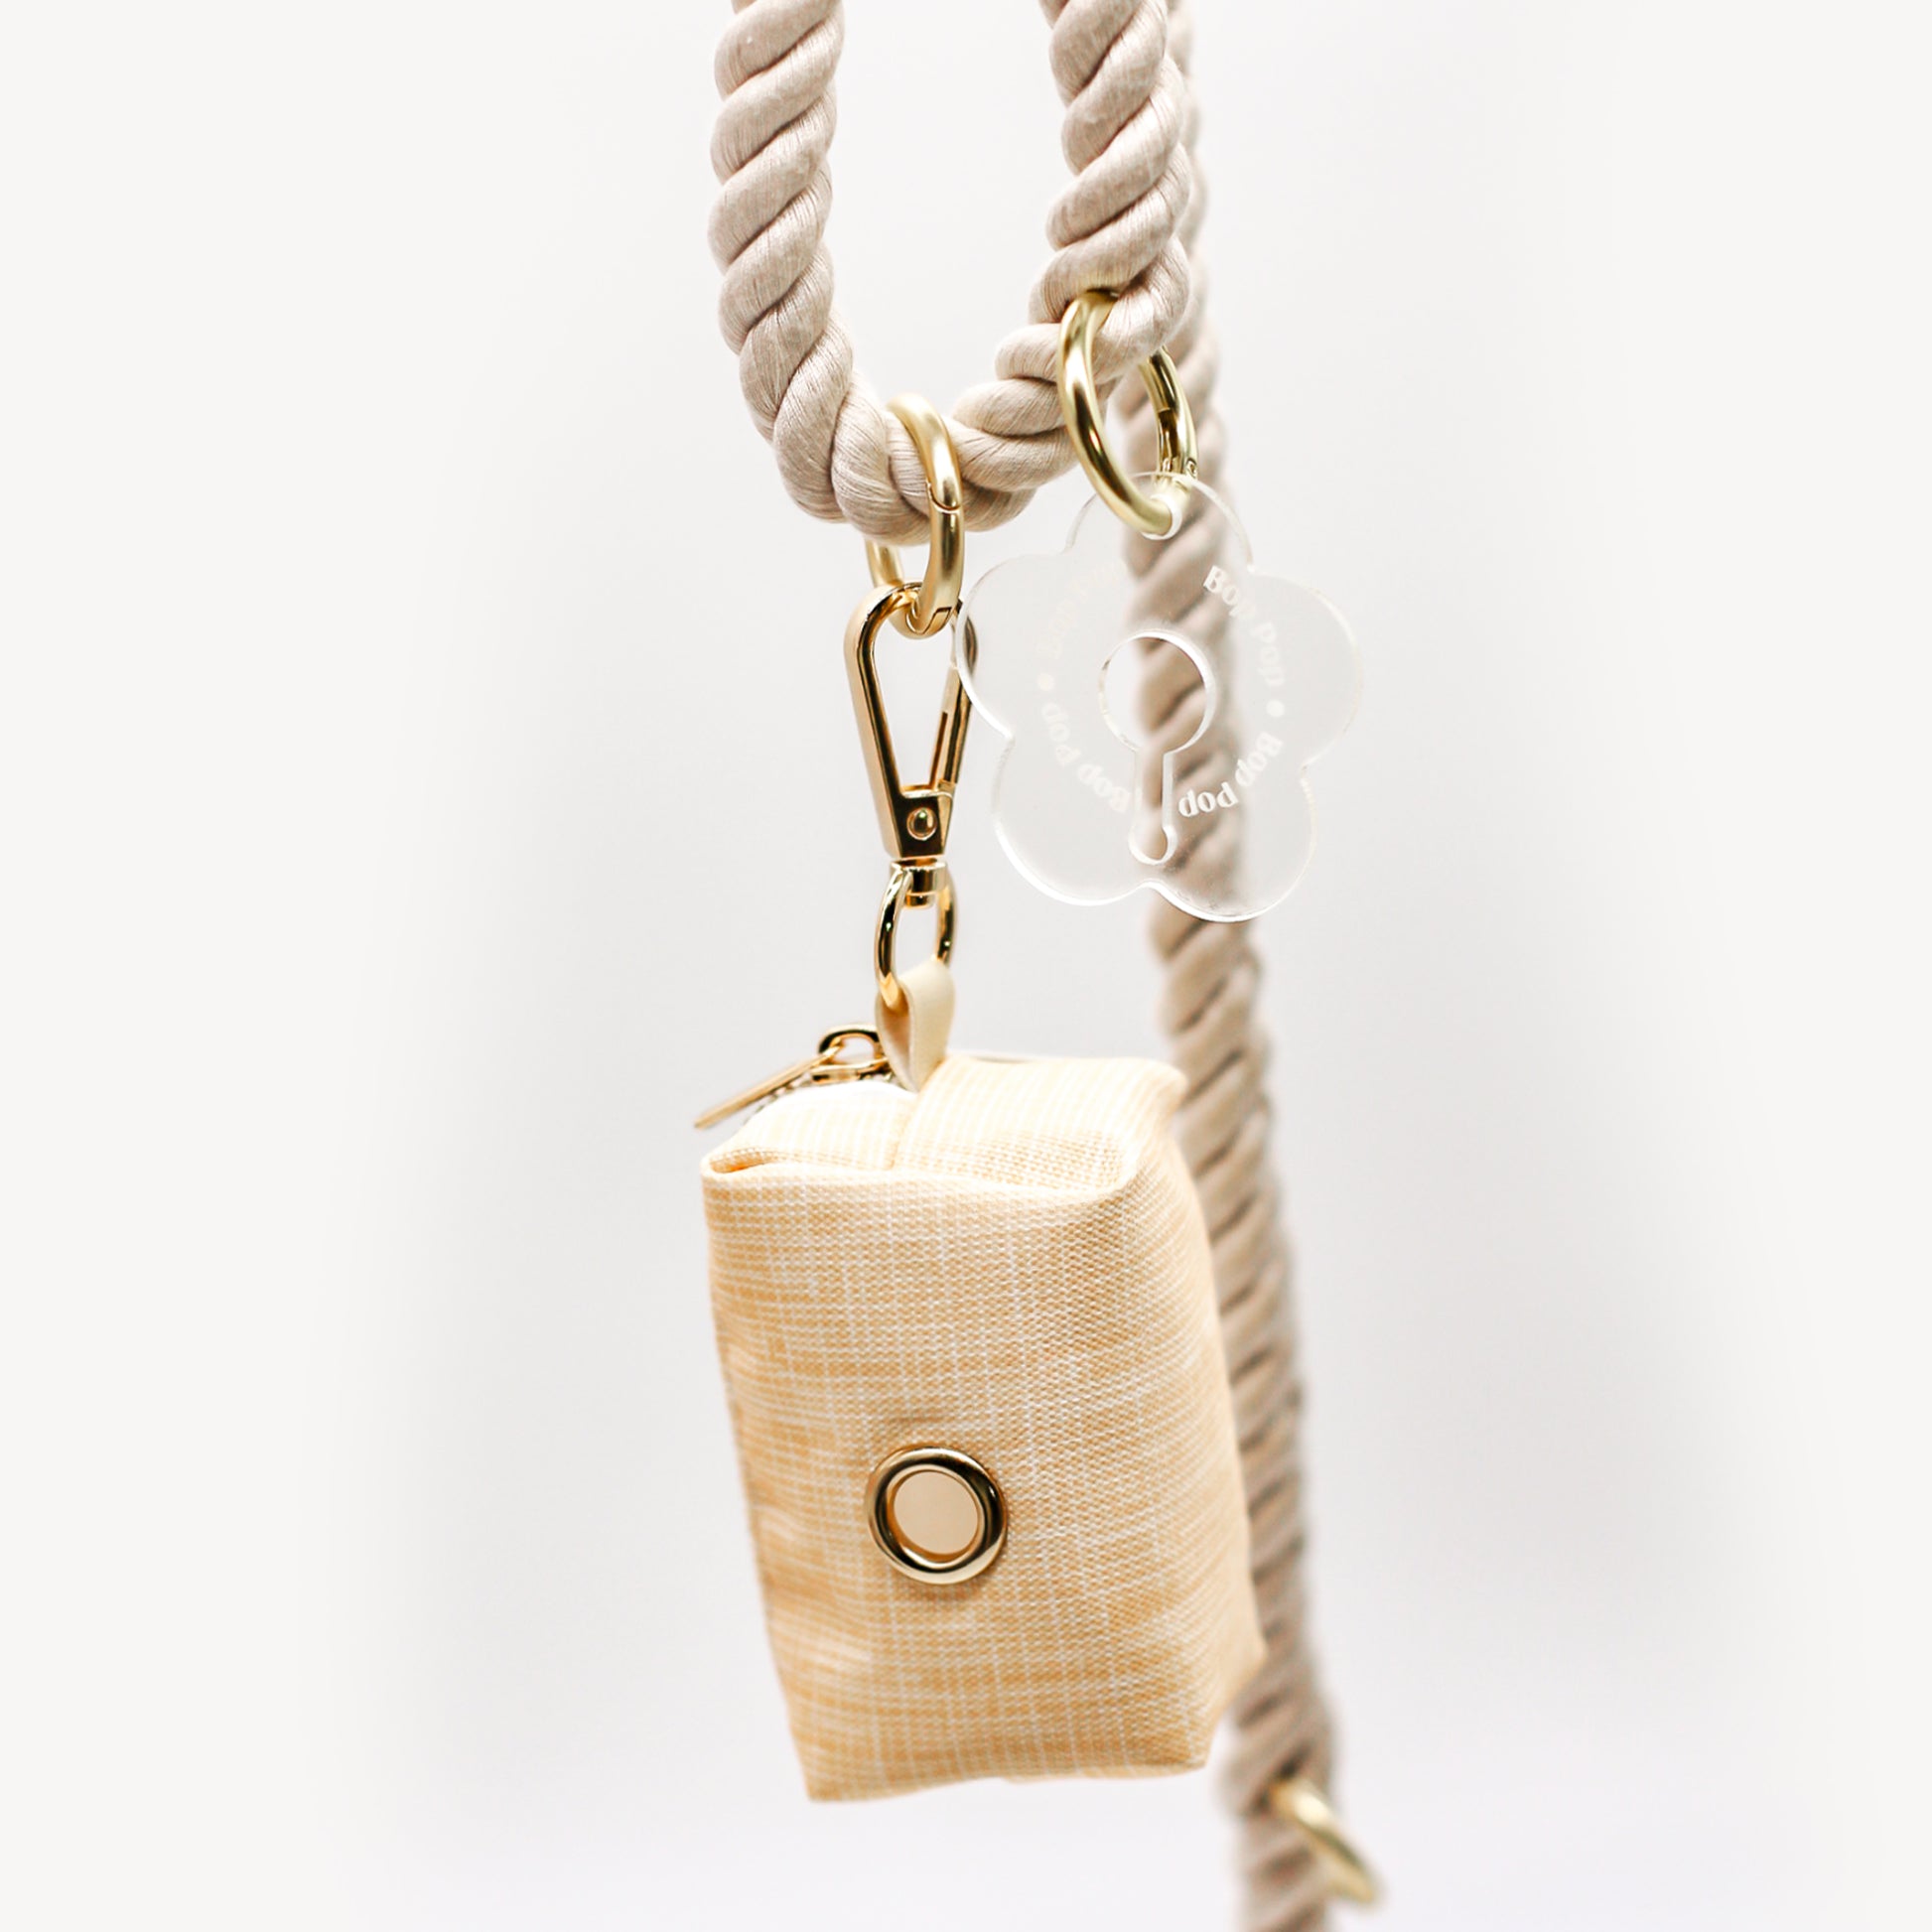 Poop Bag holder Dispenser set with Poop Loop acrylic gold harware with rope leash bop pop pets accessories beige bohemian style